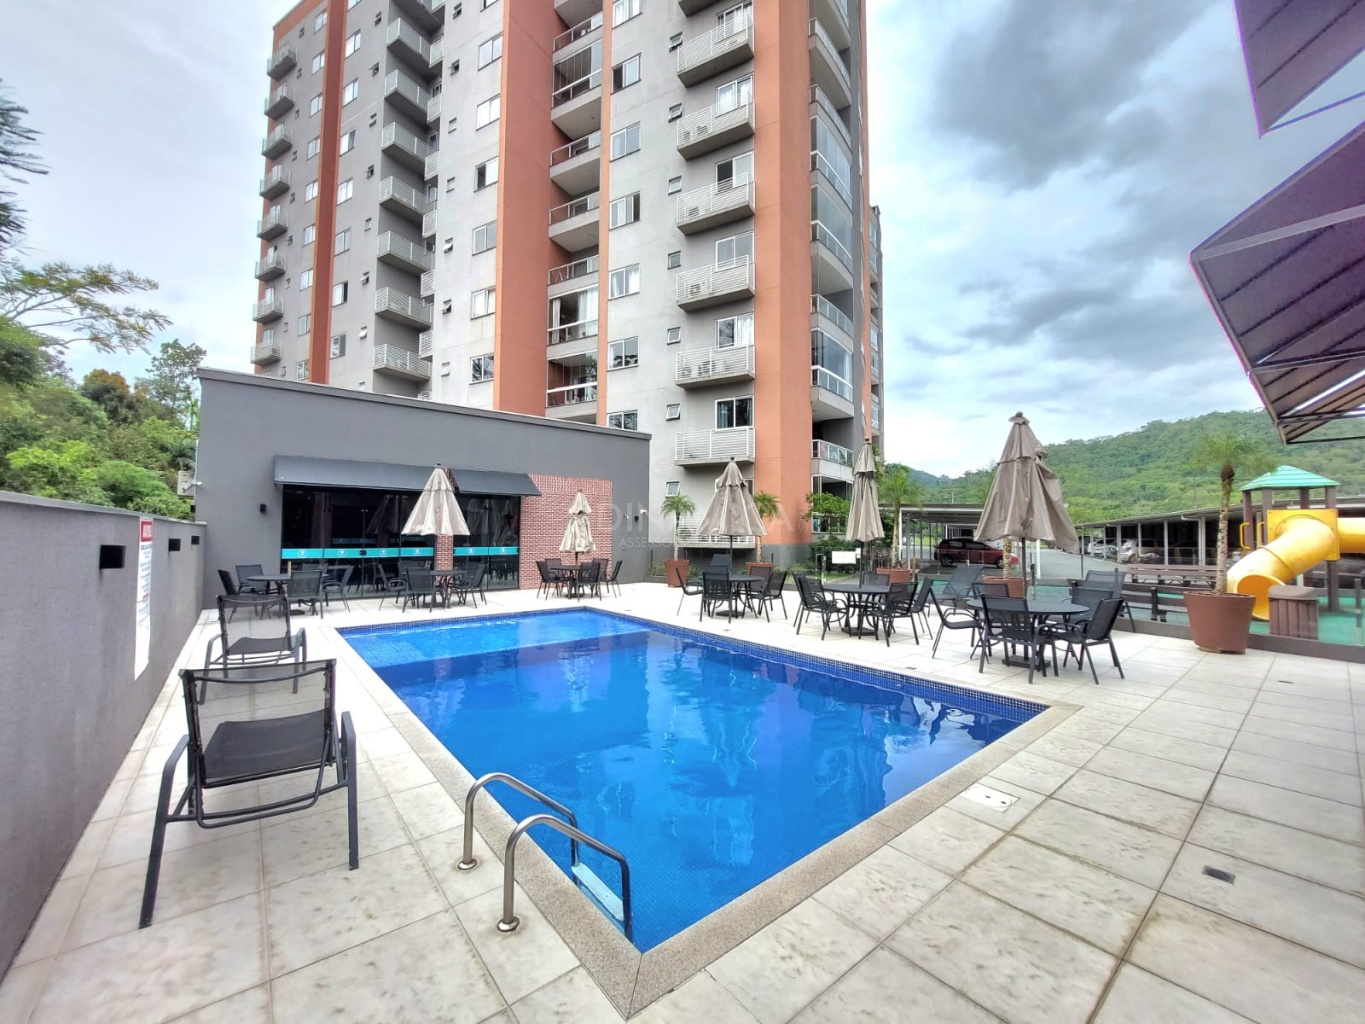 Apartamento na Itoupava Central, Apartamento mobiliado, Apartamento 2 quartos, vaga privativa, último andar, com piscina, infraestrutura completa, na dinamica sul, a imobiliária presente nas suas conquistas.